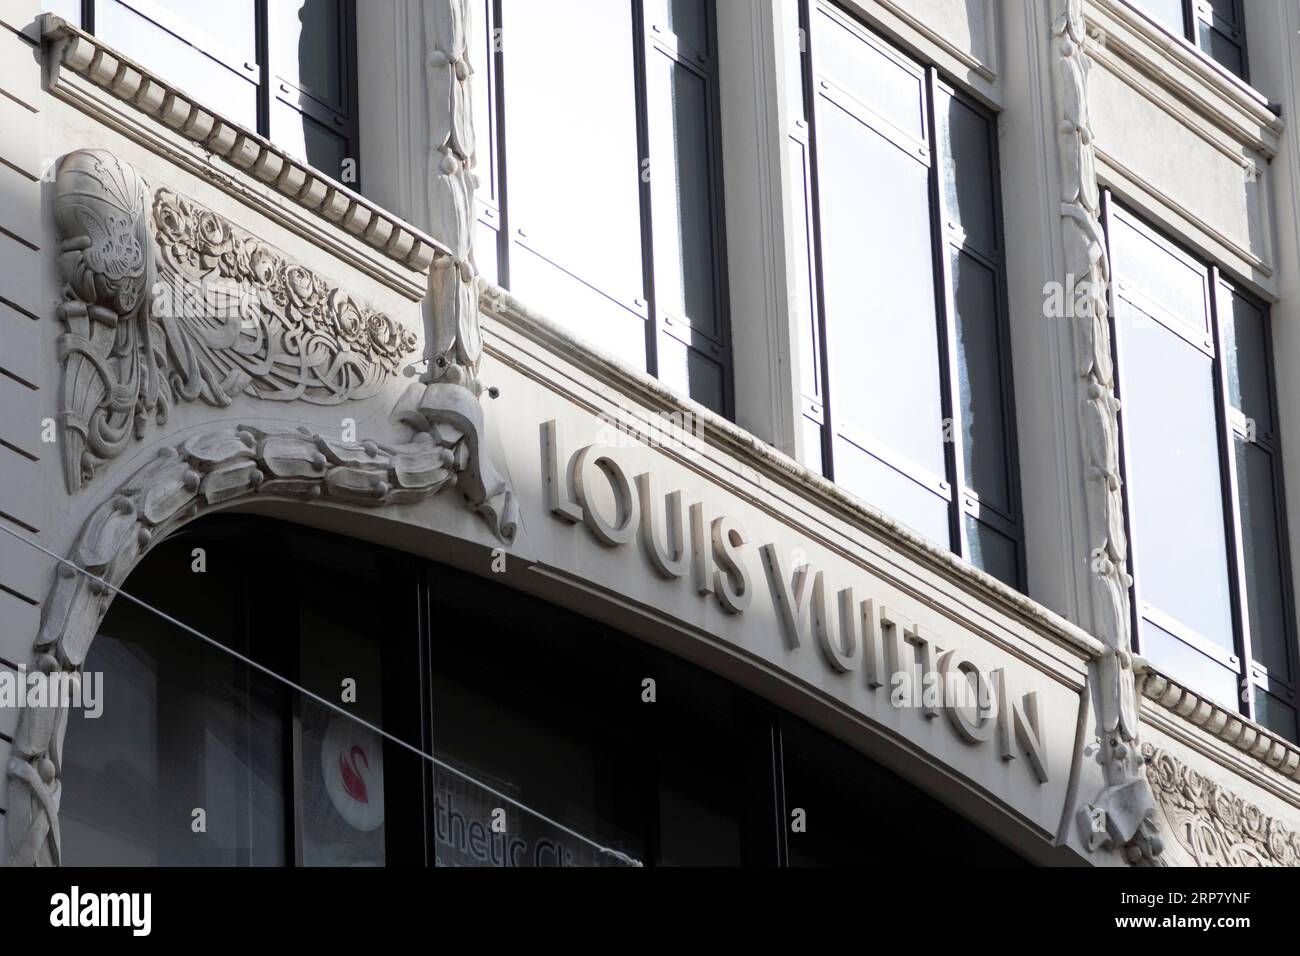 Louis Vuitton Store Facade On Fashion Street Stock Photo